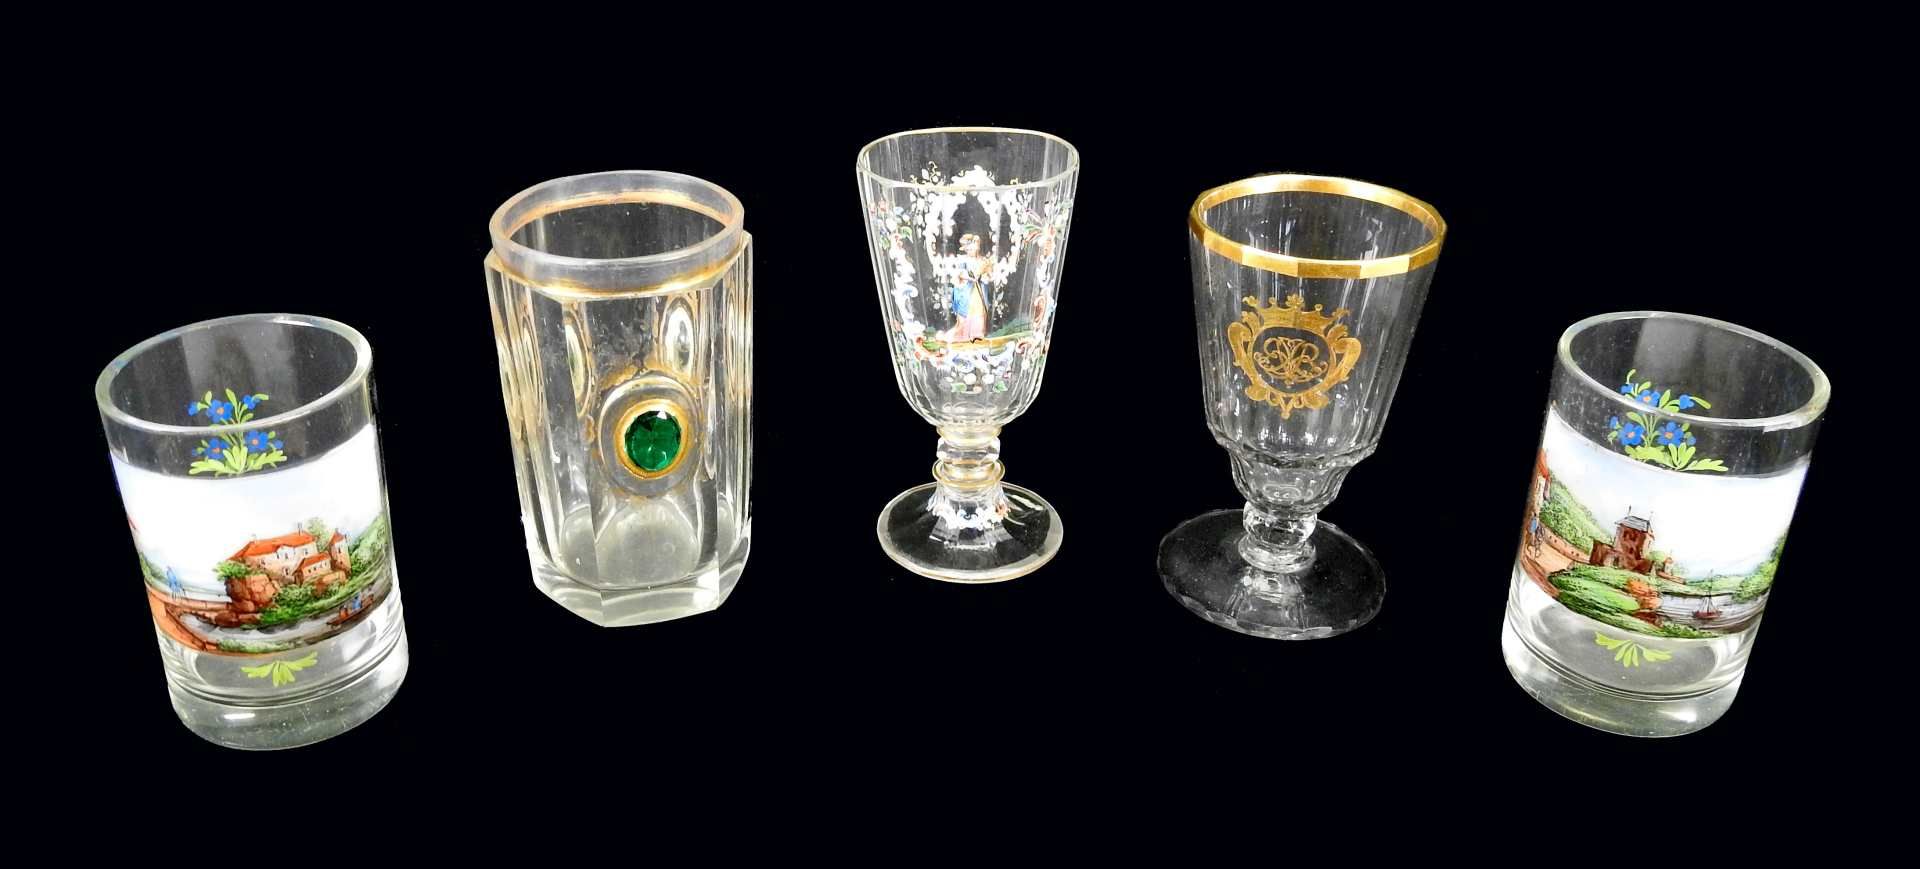 Konvolut von Gläsern Glas. Konvolut bestehend aus 5 Gläsern, darunter 2 Becher aus d